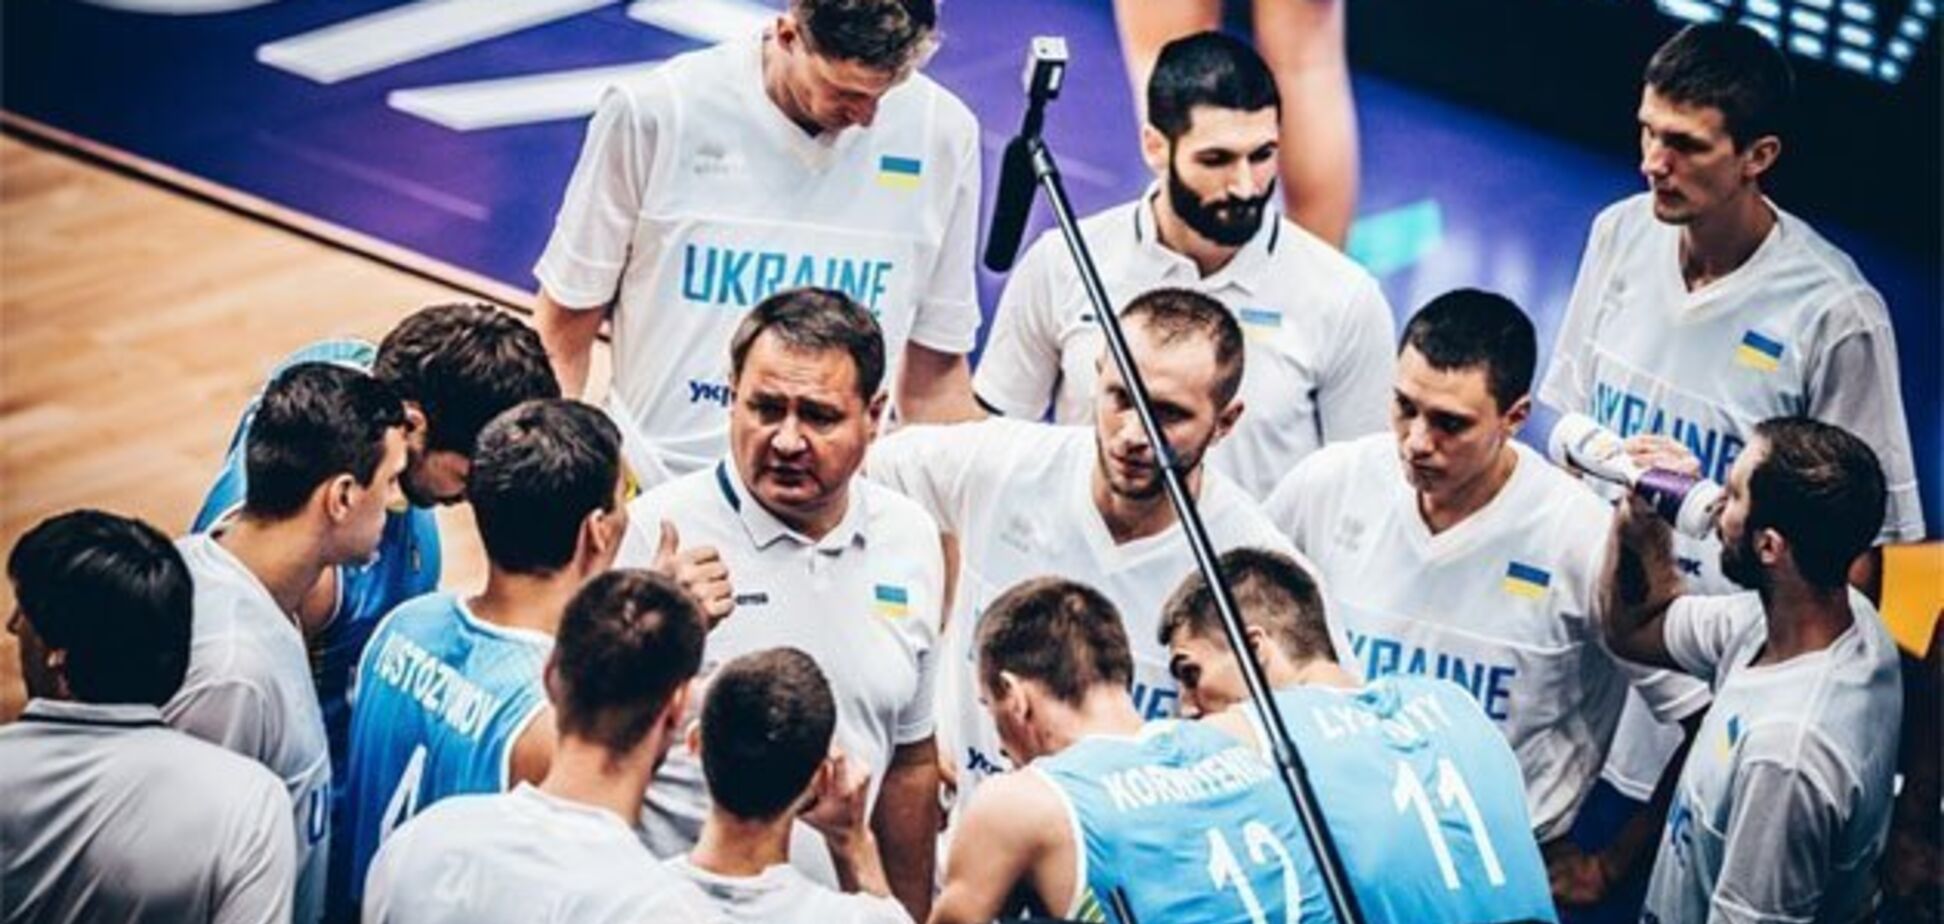 Збірна України з баскетболу в складі мрії проведе відкрите тренування перед битвою з Іспанією